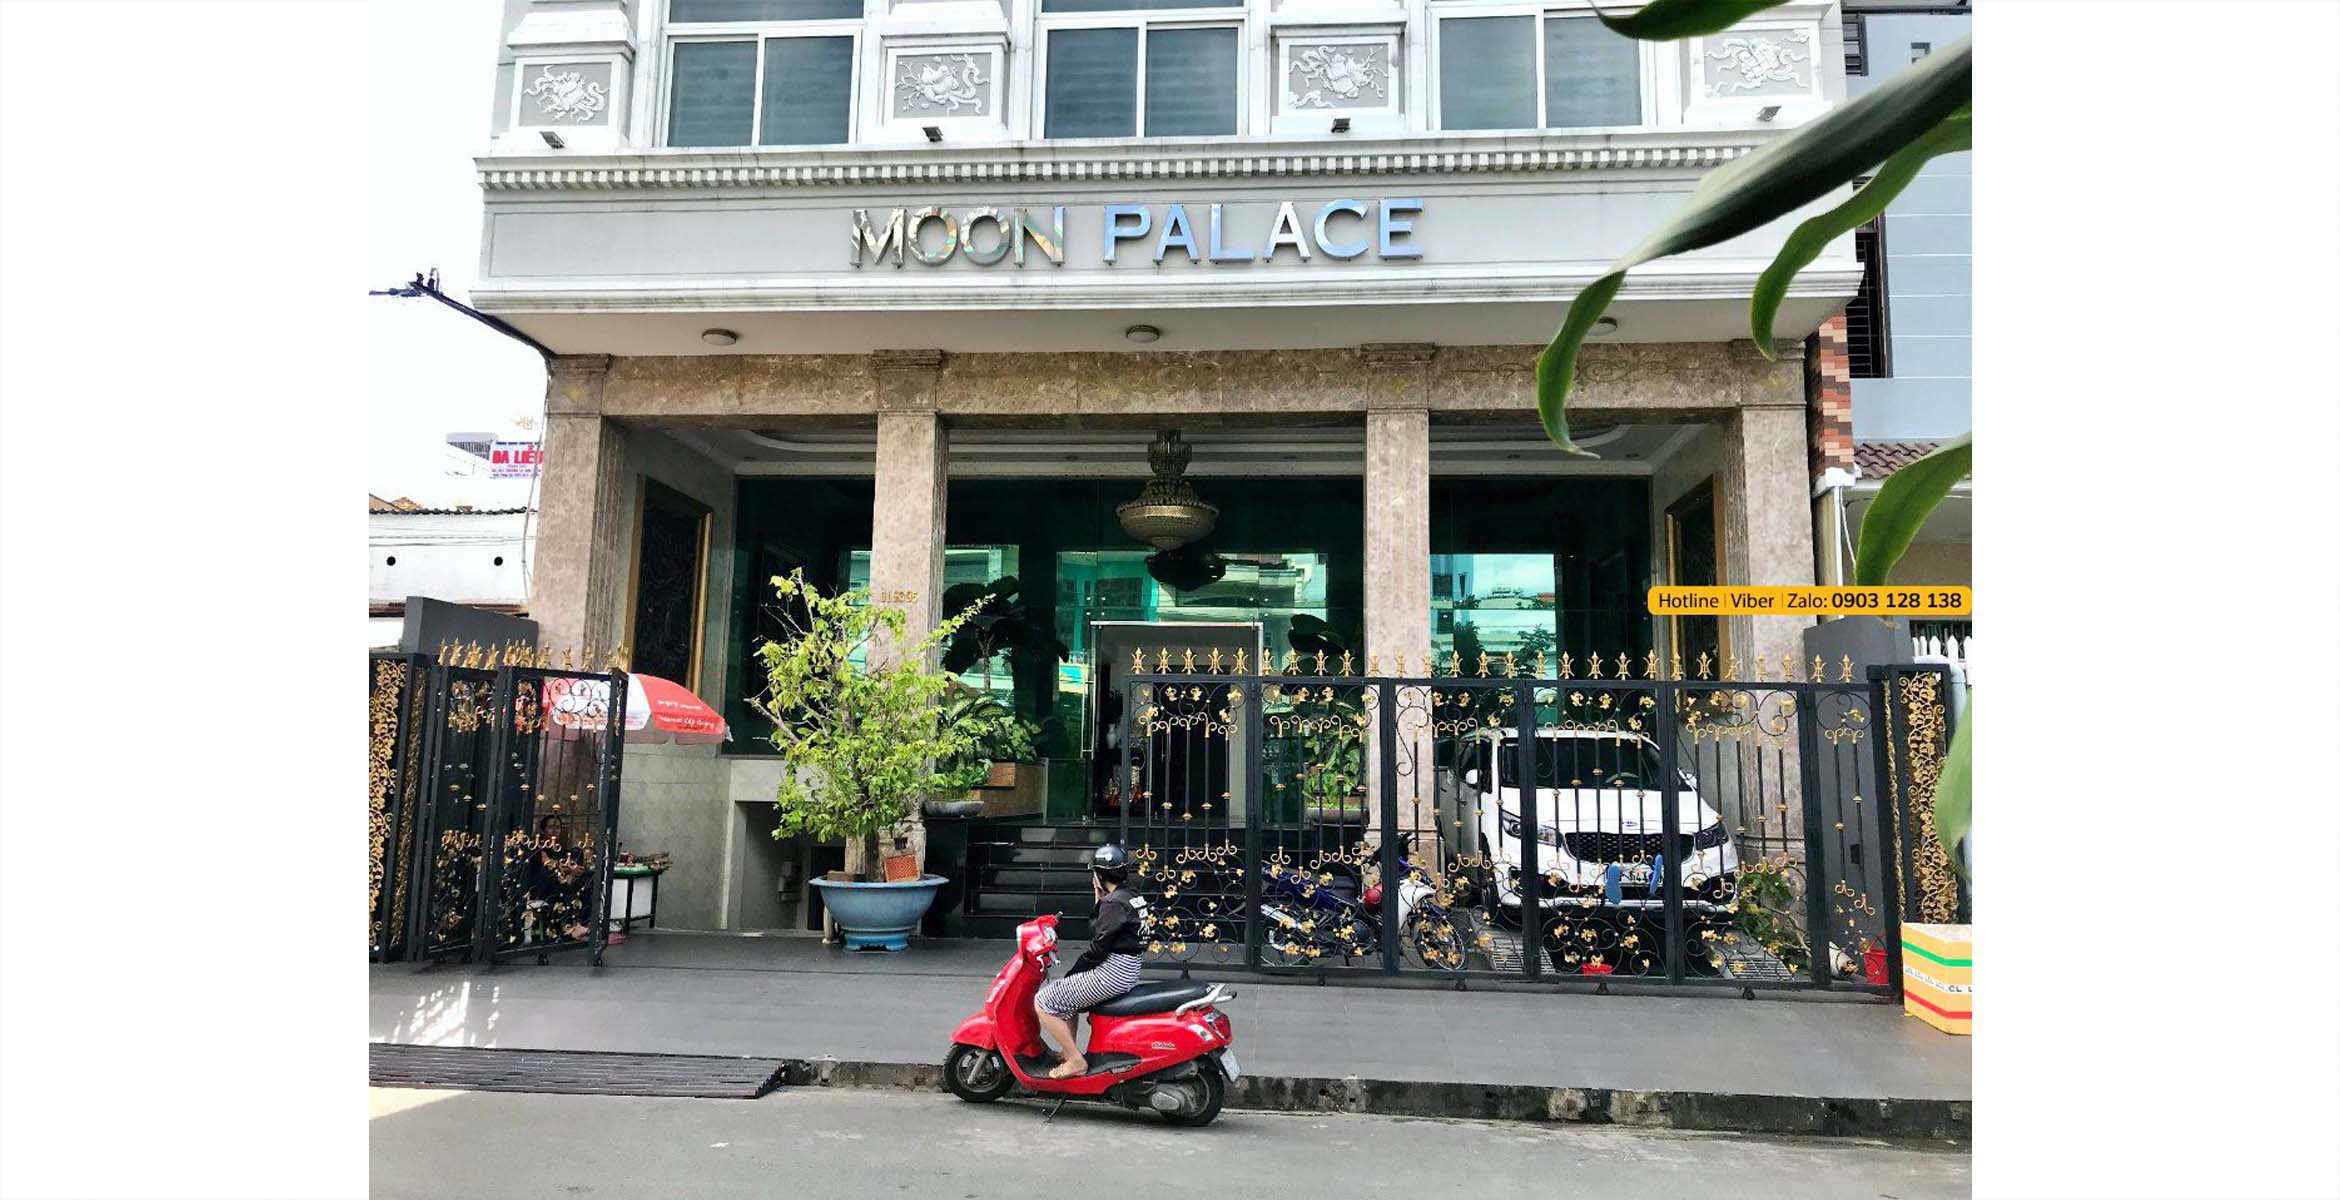 Bán Tòa Nhà Moon Palace Đường Số 41 Quận 7